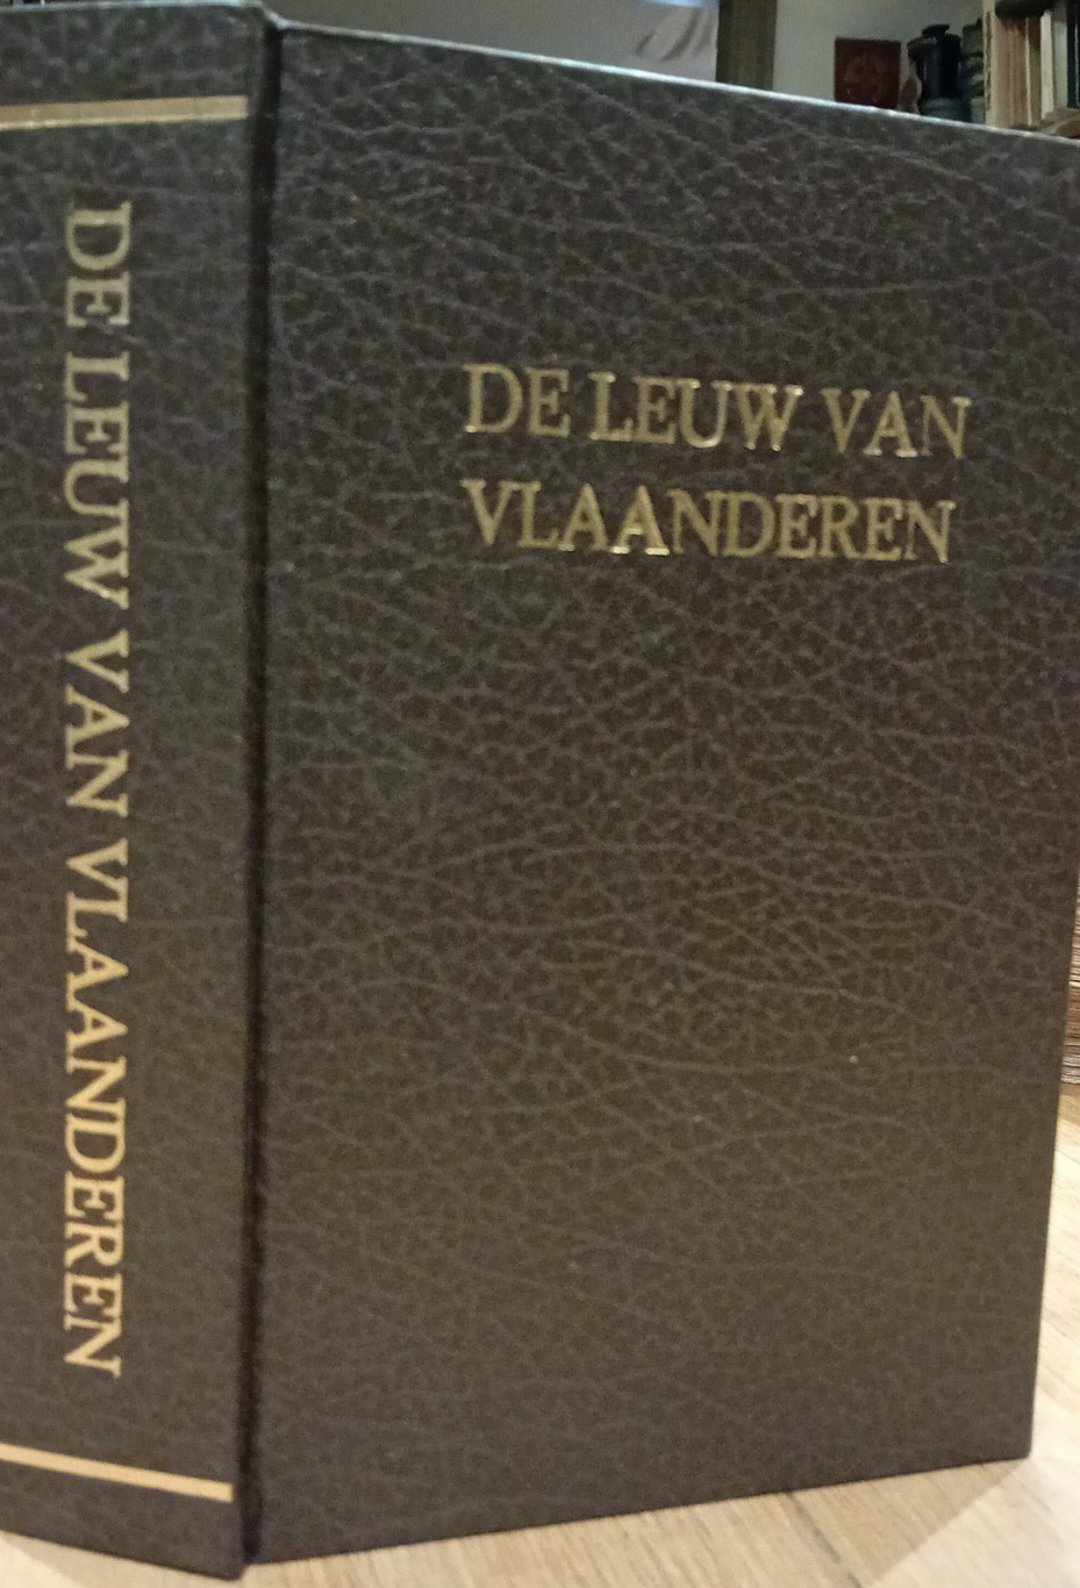 De Leeuw van Vlaanderen door Hendrik Concience - uitgave 1952  mooi ingebonden